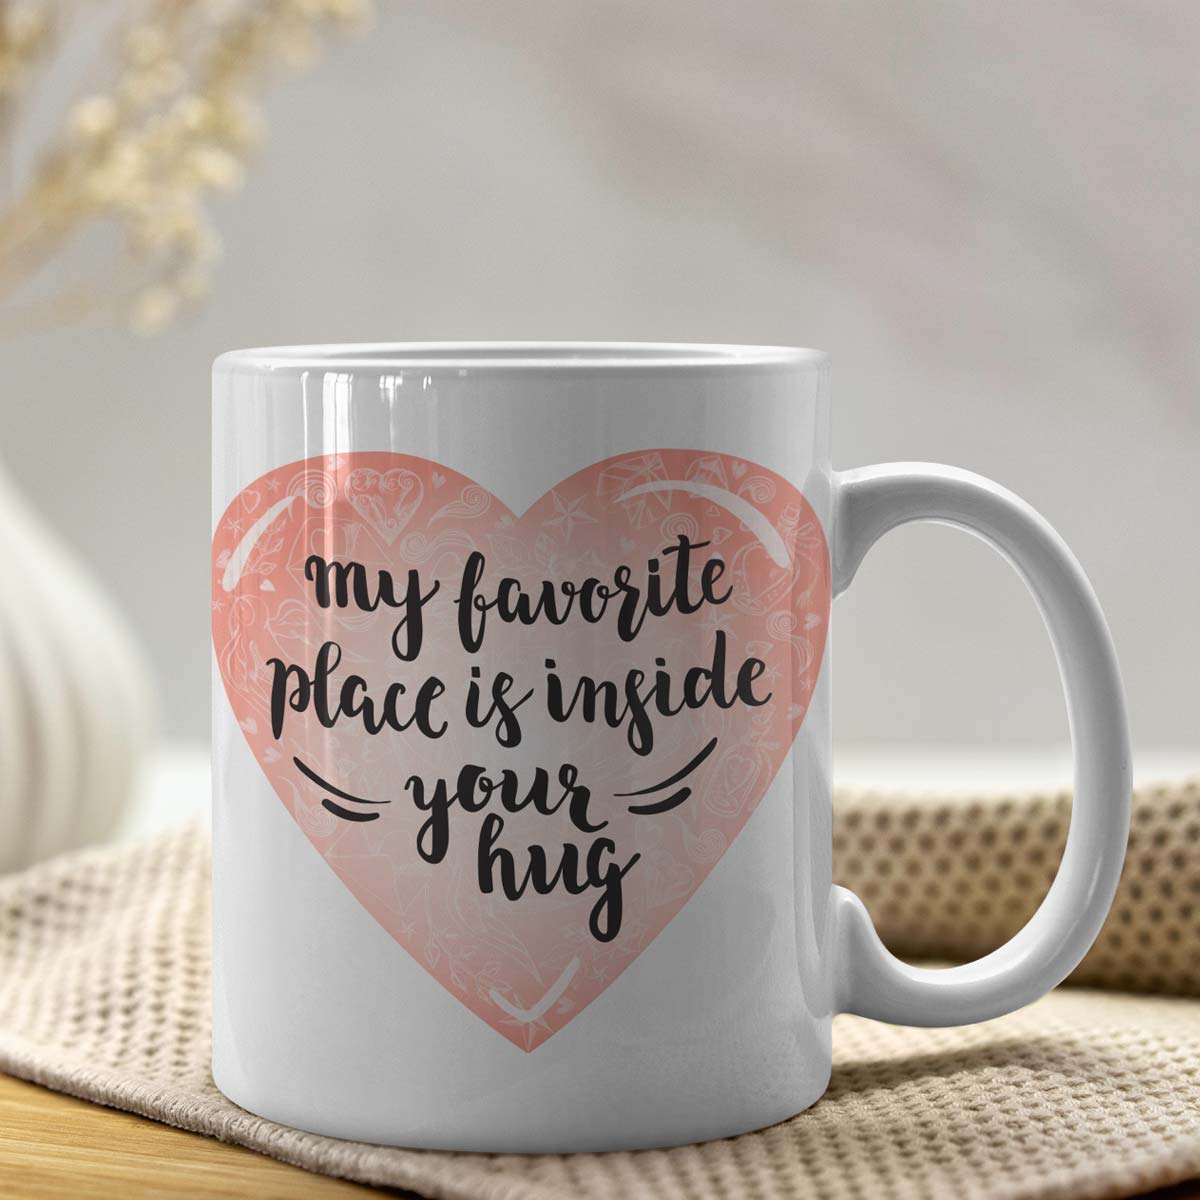 Inside Your Hug Ceramic Mug-4